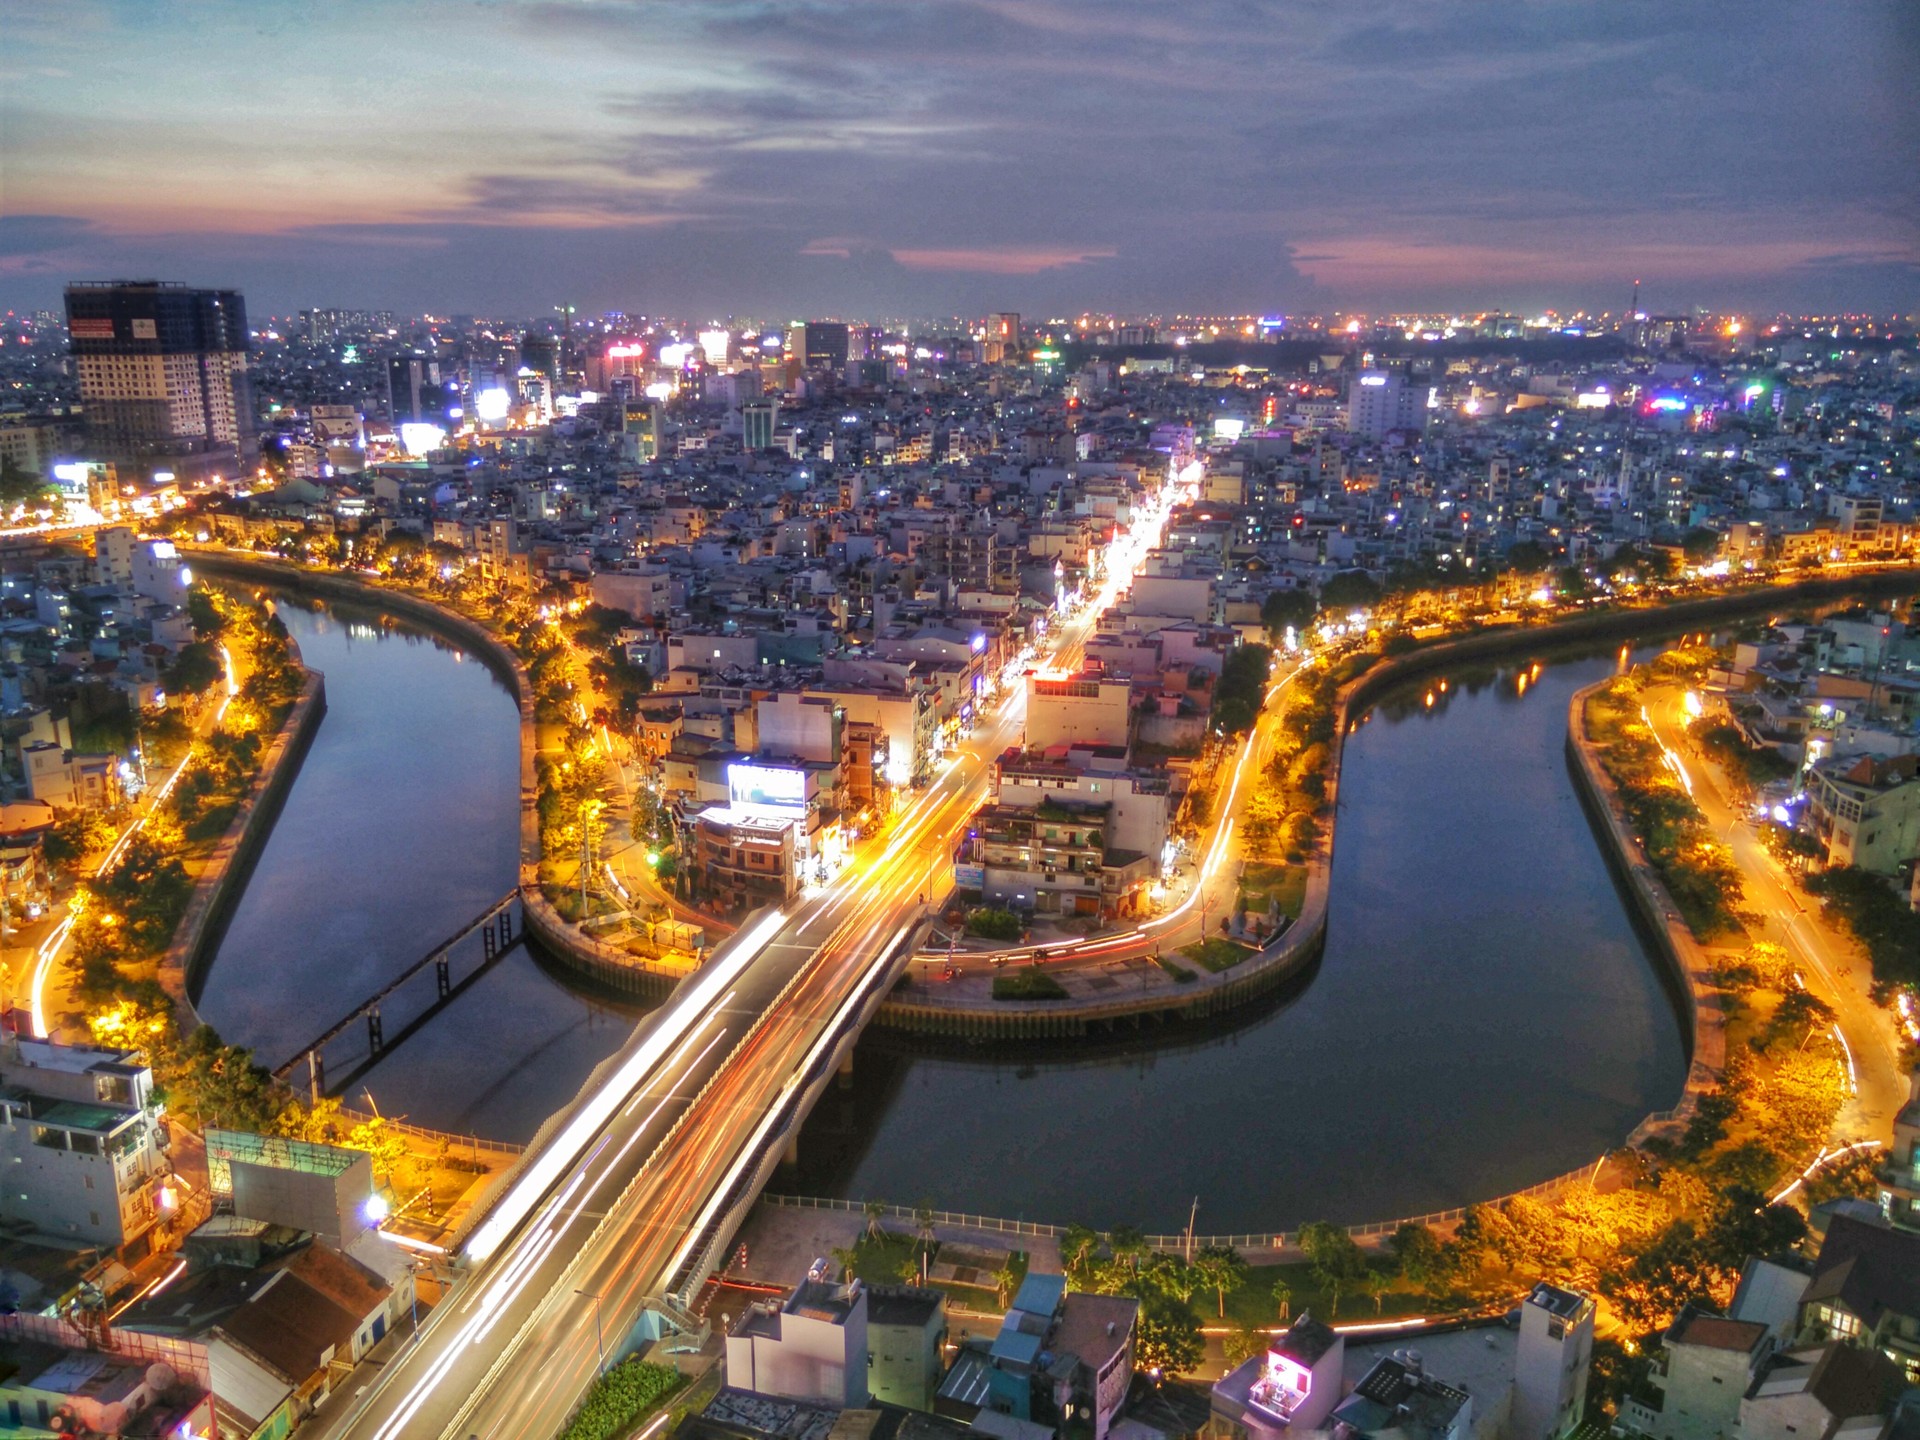 Hình ảnh Sài Gòn về đêm khoác lên chiếc áo lung linh rực rỡ   thptlamnghiepeduvn